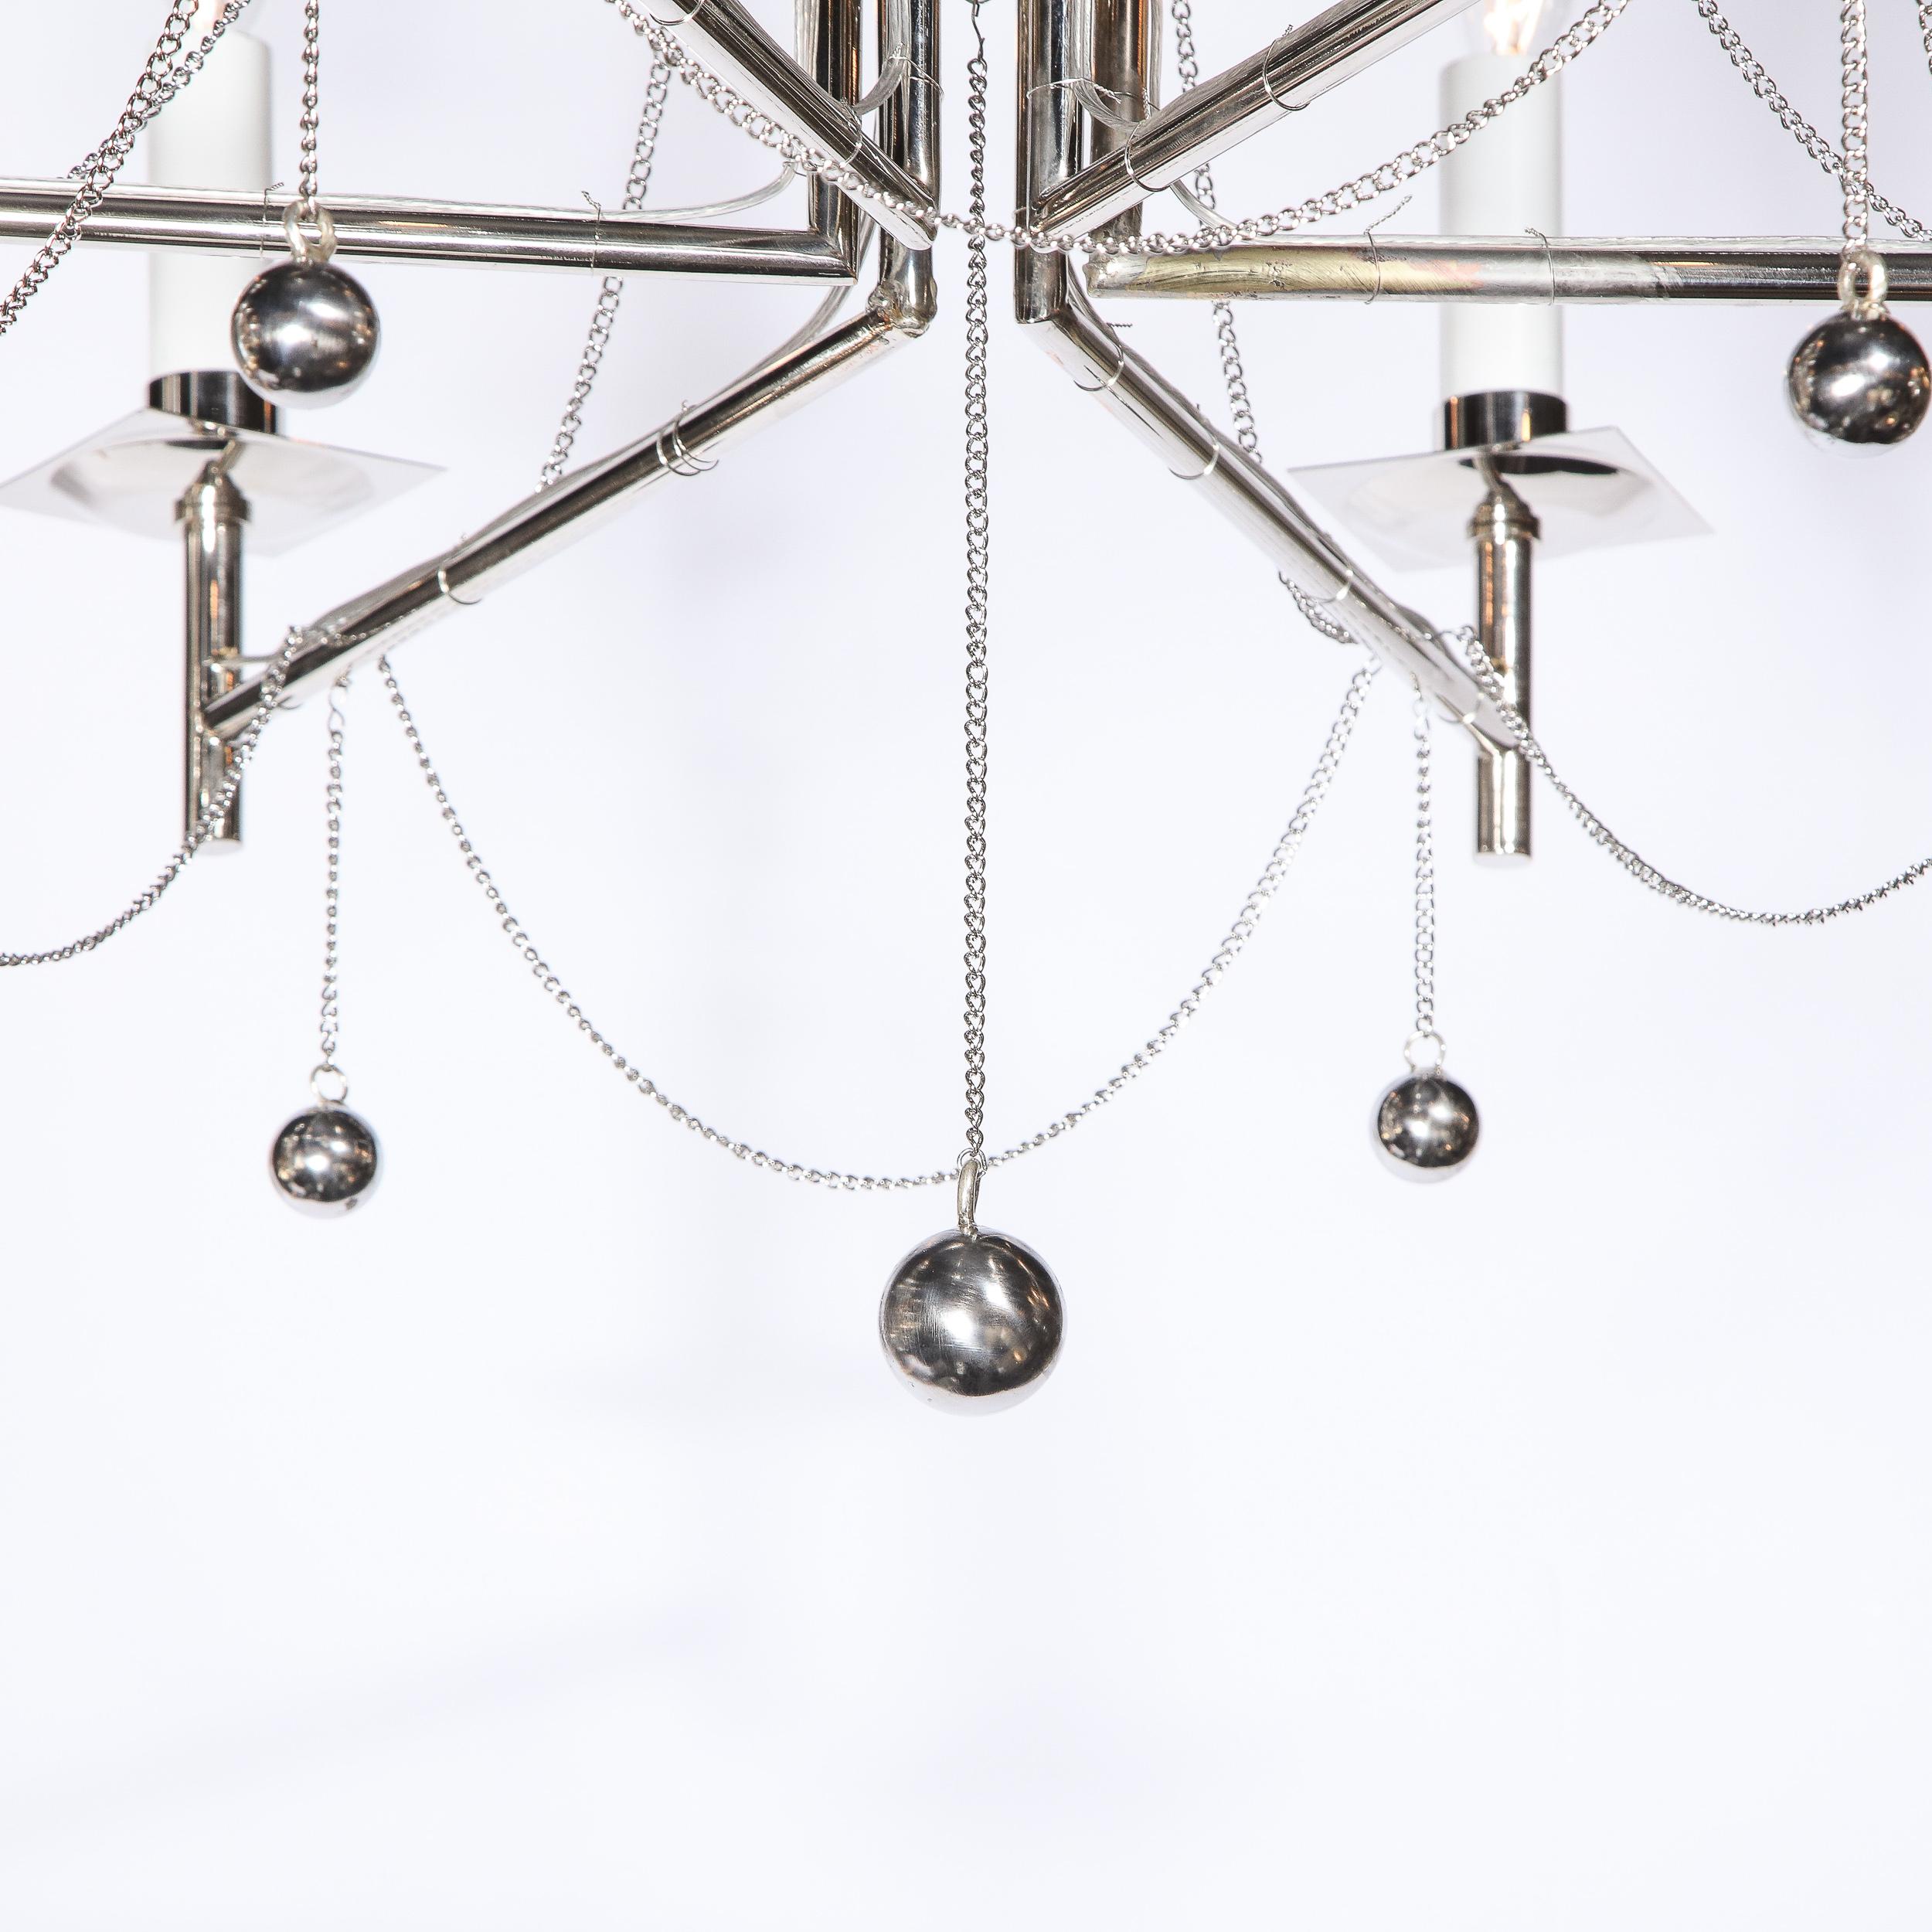 Sechsarmiger Kronleuchter aus poliertem Nickel mit Kette und kugelförmigen Details im modernistischen Stil (amerikanisch)